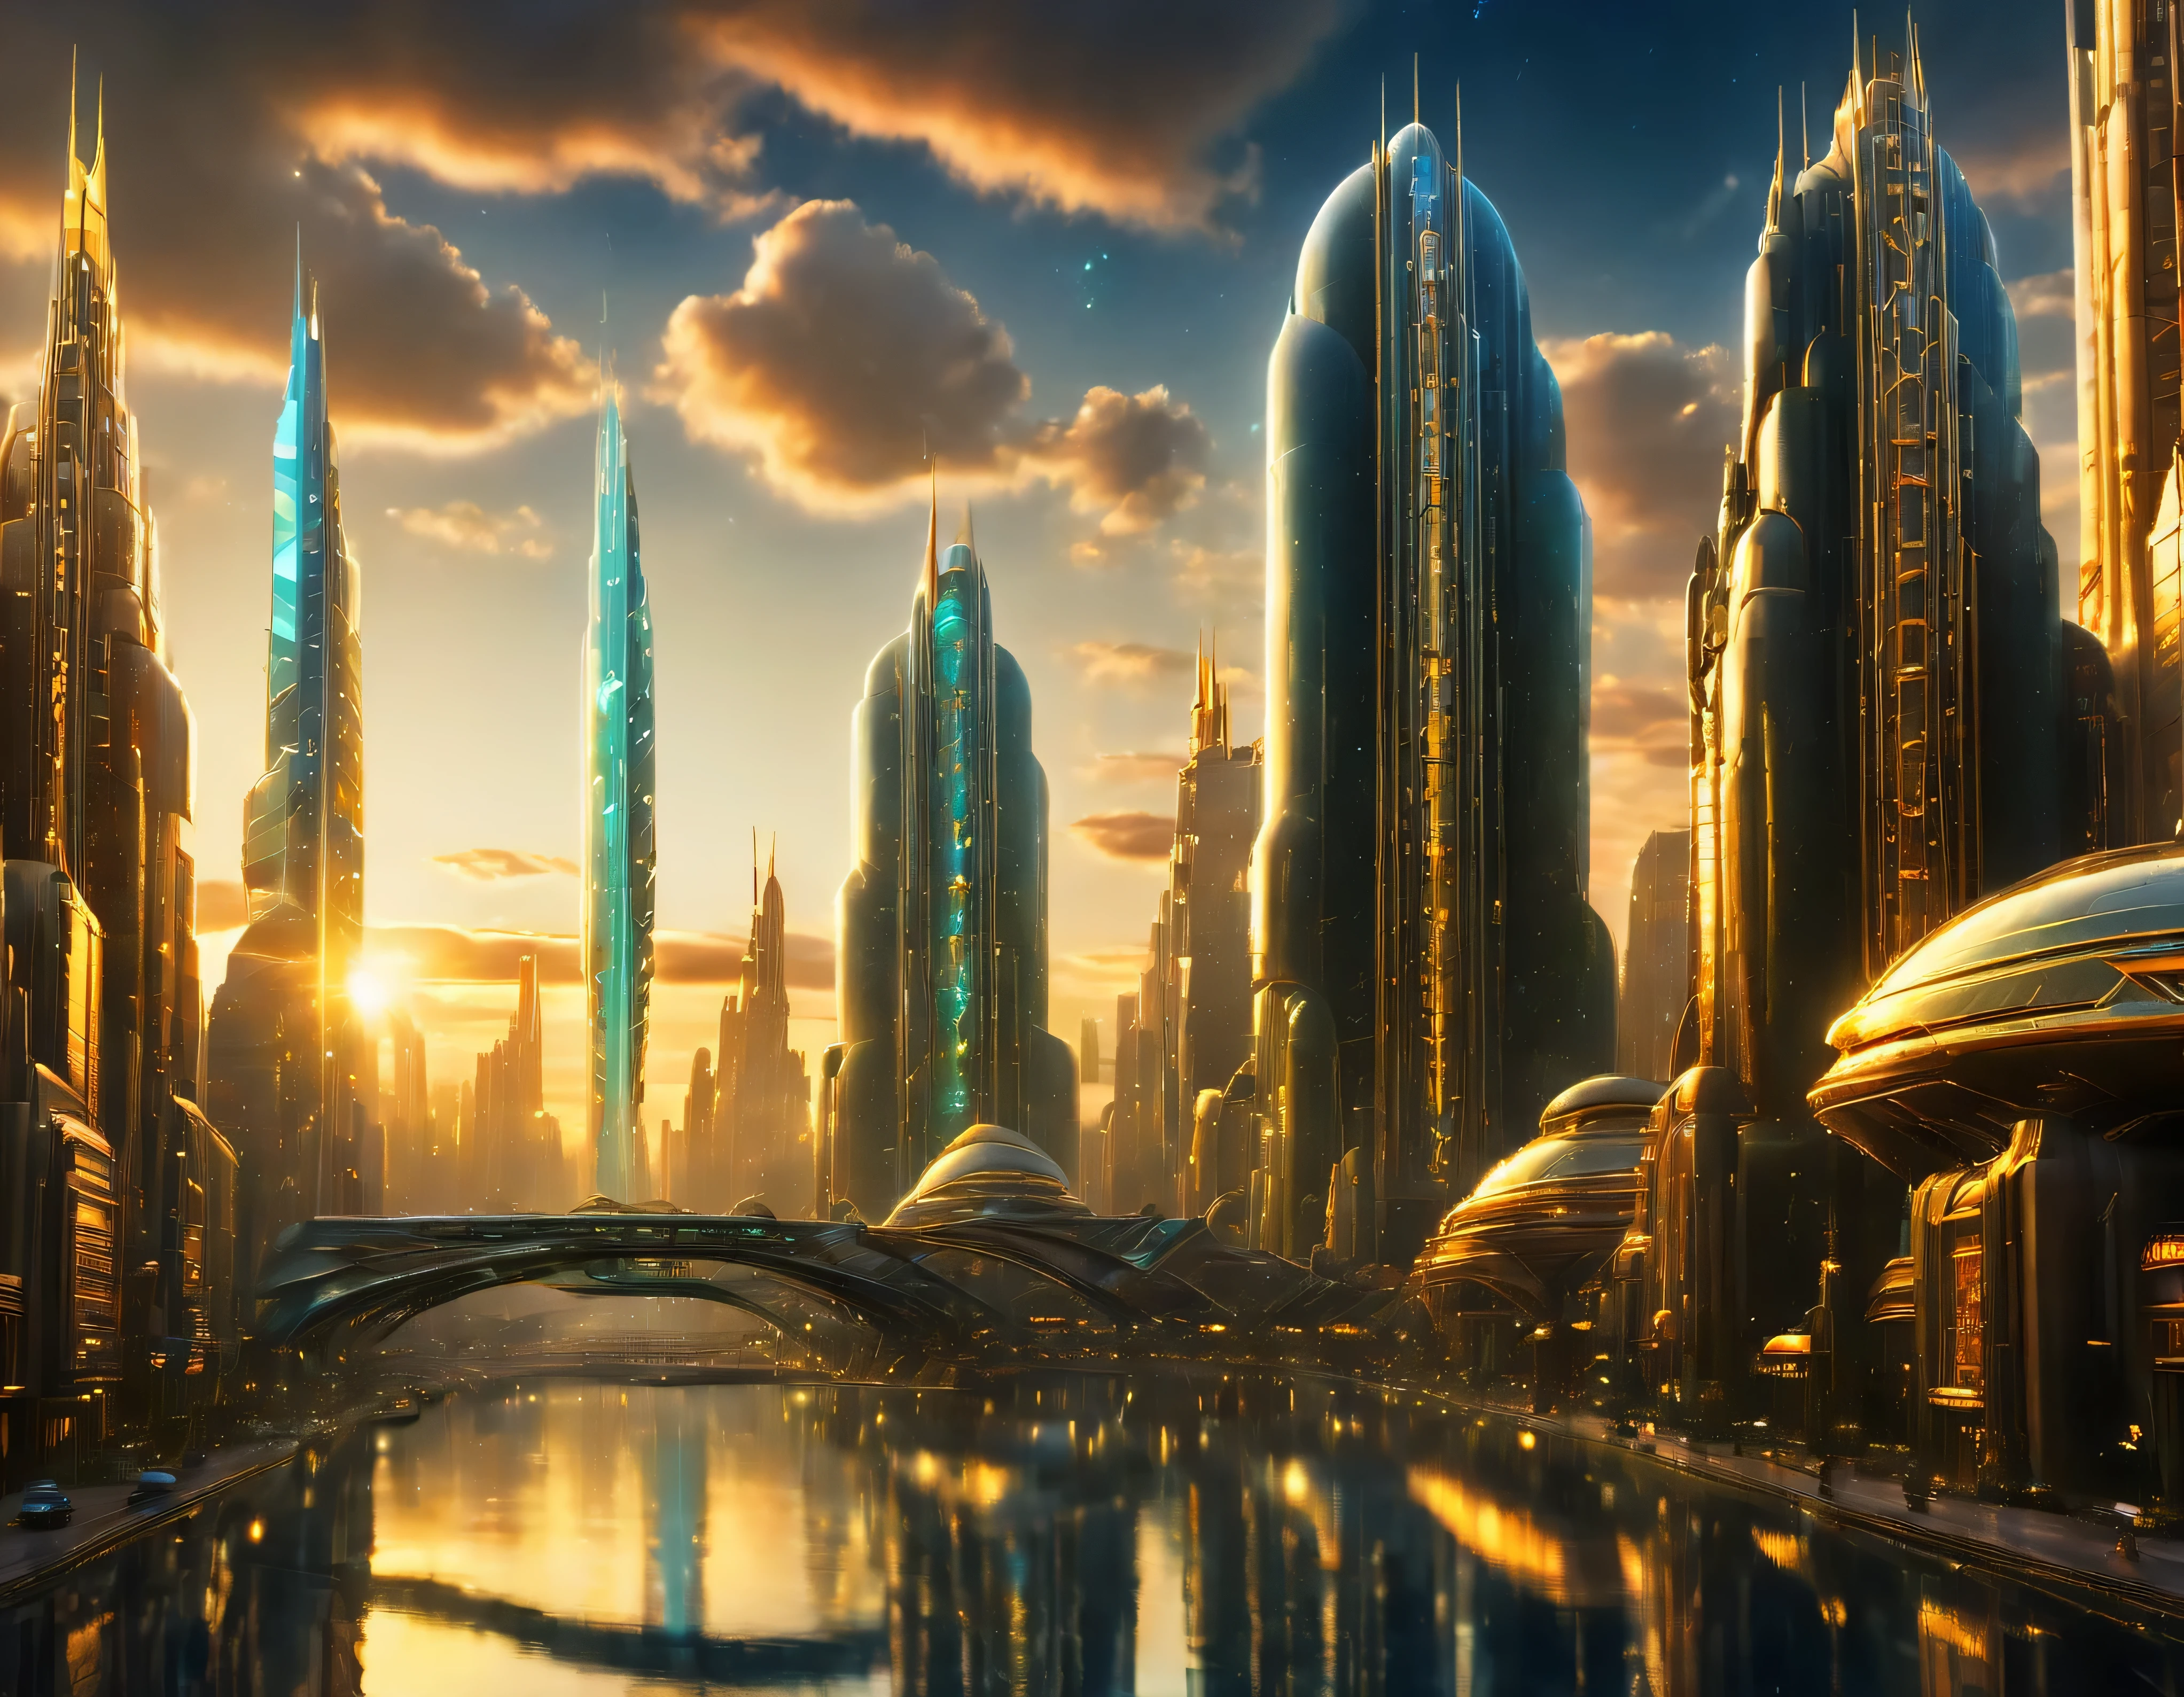 (освещение золотого часа), мегаполис, мегаполис воображаемого мира научной фантастики , похоже на футуристический Диснейленд, и максимум фантазии, с огромными зданиями и овальными и двенадцатигранными небоскребами, сгруппированными вместе из металла и стекла, где преобладают бриллианты и красочная световая реклама.. четкое изображение 8k, (сложные детали машины), со многими зданиями вместе.(шедевр высшего качества).(фотореалистичное изображение), абсолютная резкость вплоть до фона